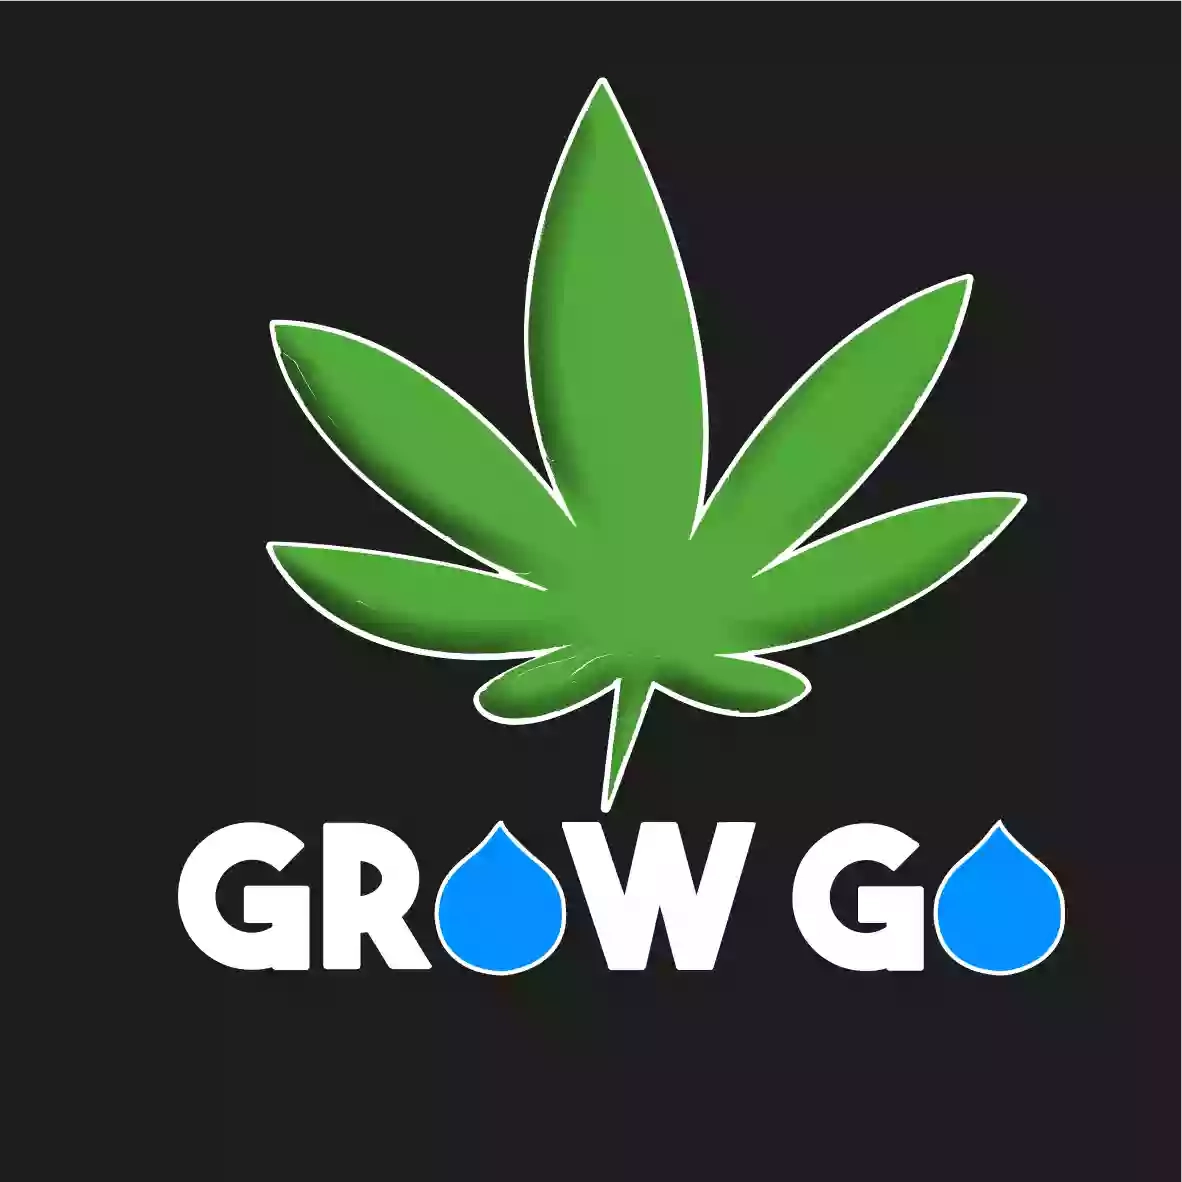 Grow Go (Canapaio - Semi - Grow shop - Accessori) Canapa Palermo - Grow shop Palermo